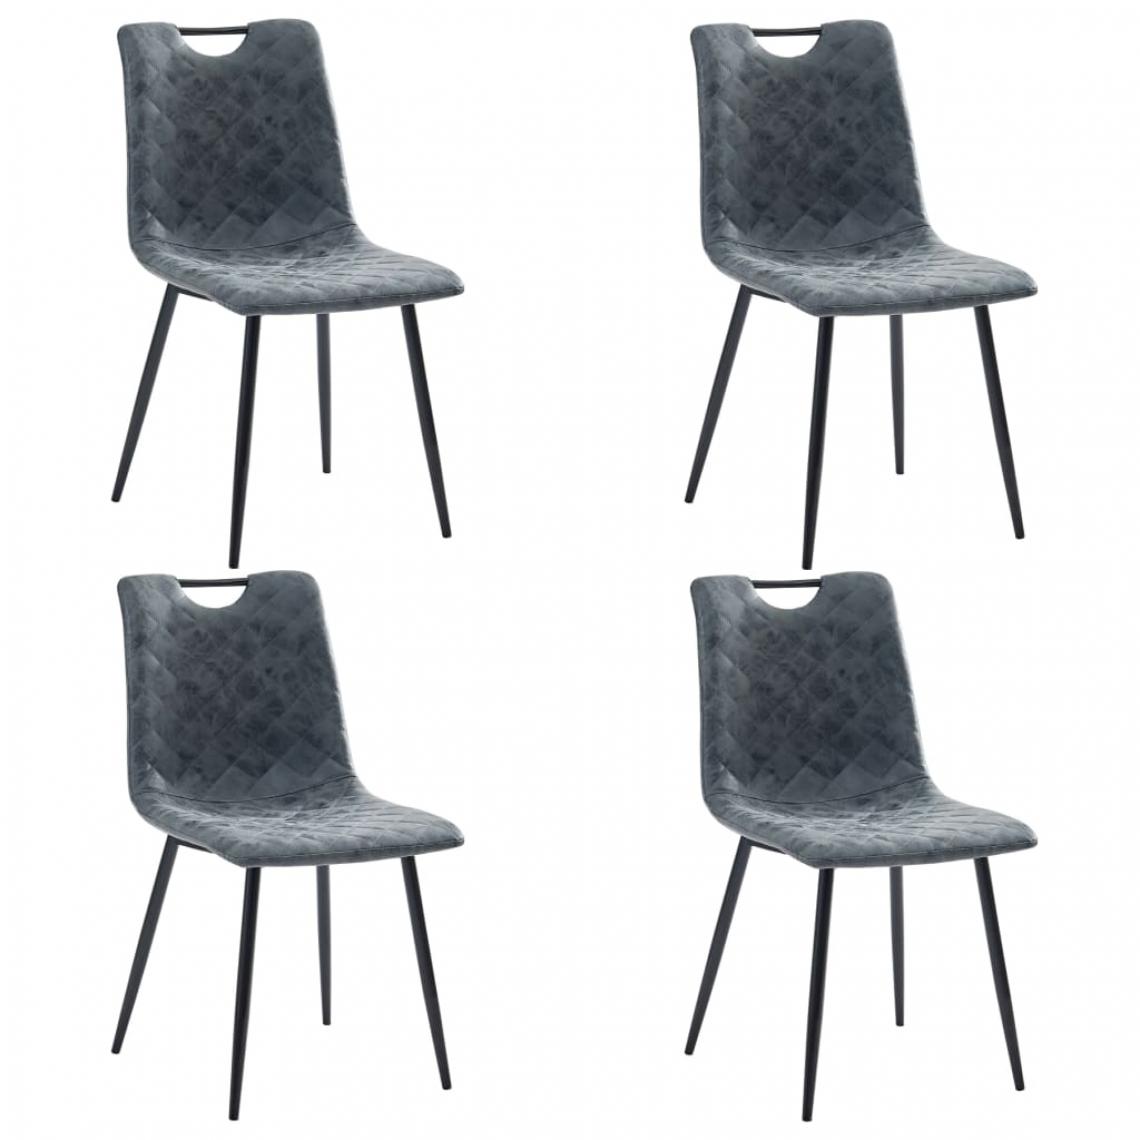 Icaverne - Esthetique Fauteuils et chaises collection Asuncion Chaises de salle à manger 4 pcs Noir Similicuir - Chaises